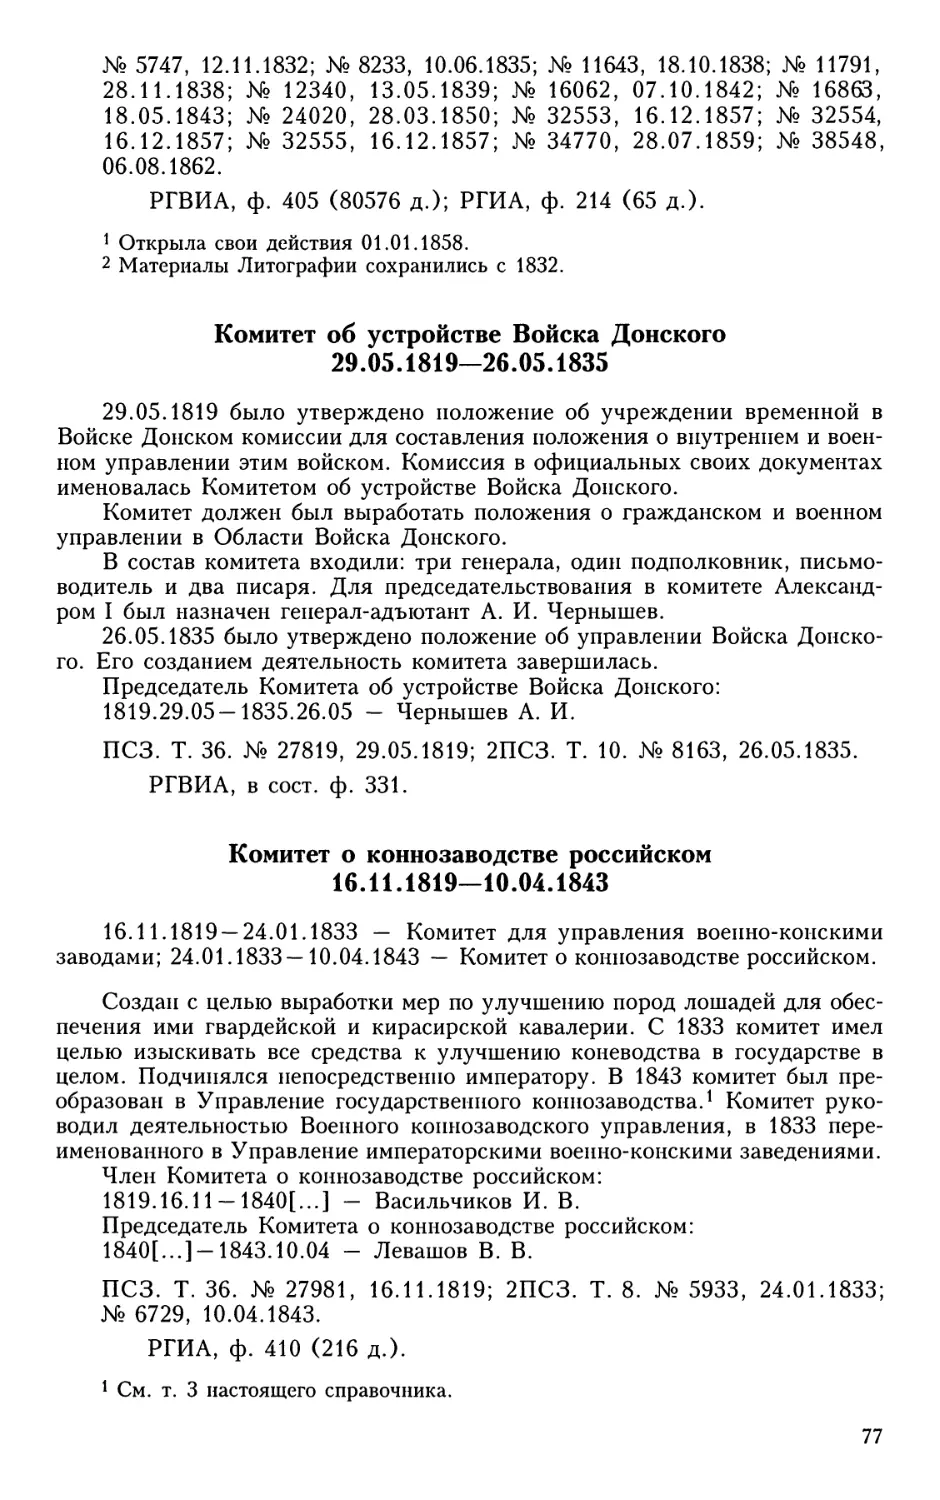 Комитет об устройстве Войска Донского
Комитет о коннозаводстве российском